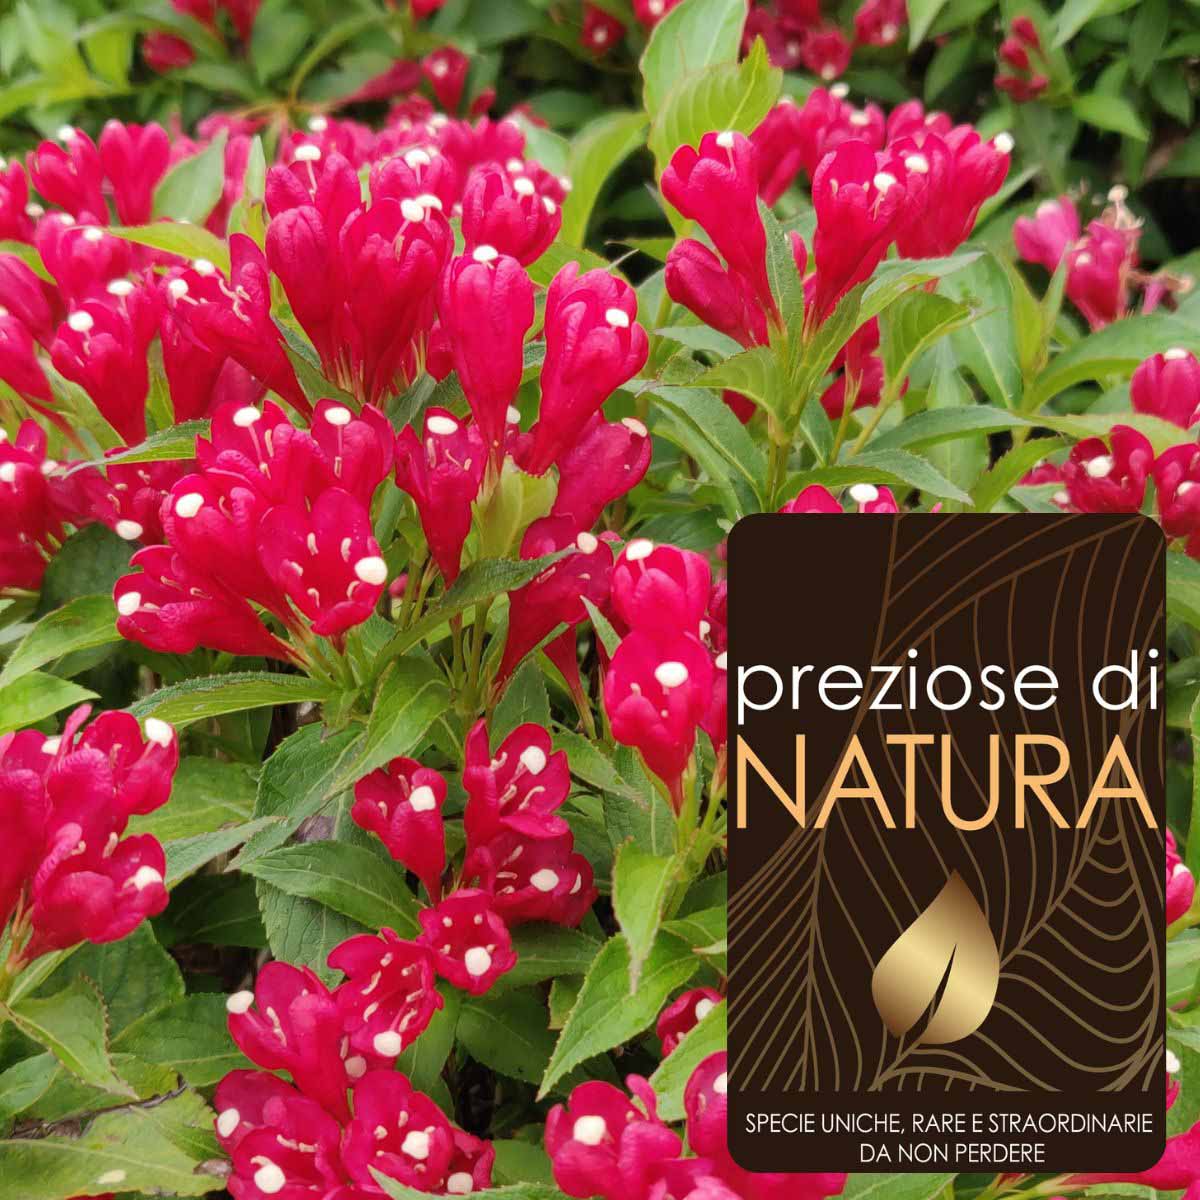 Preziose di Natura – Weigela Picobella “Rosso”